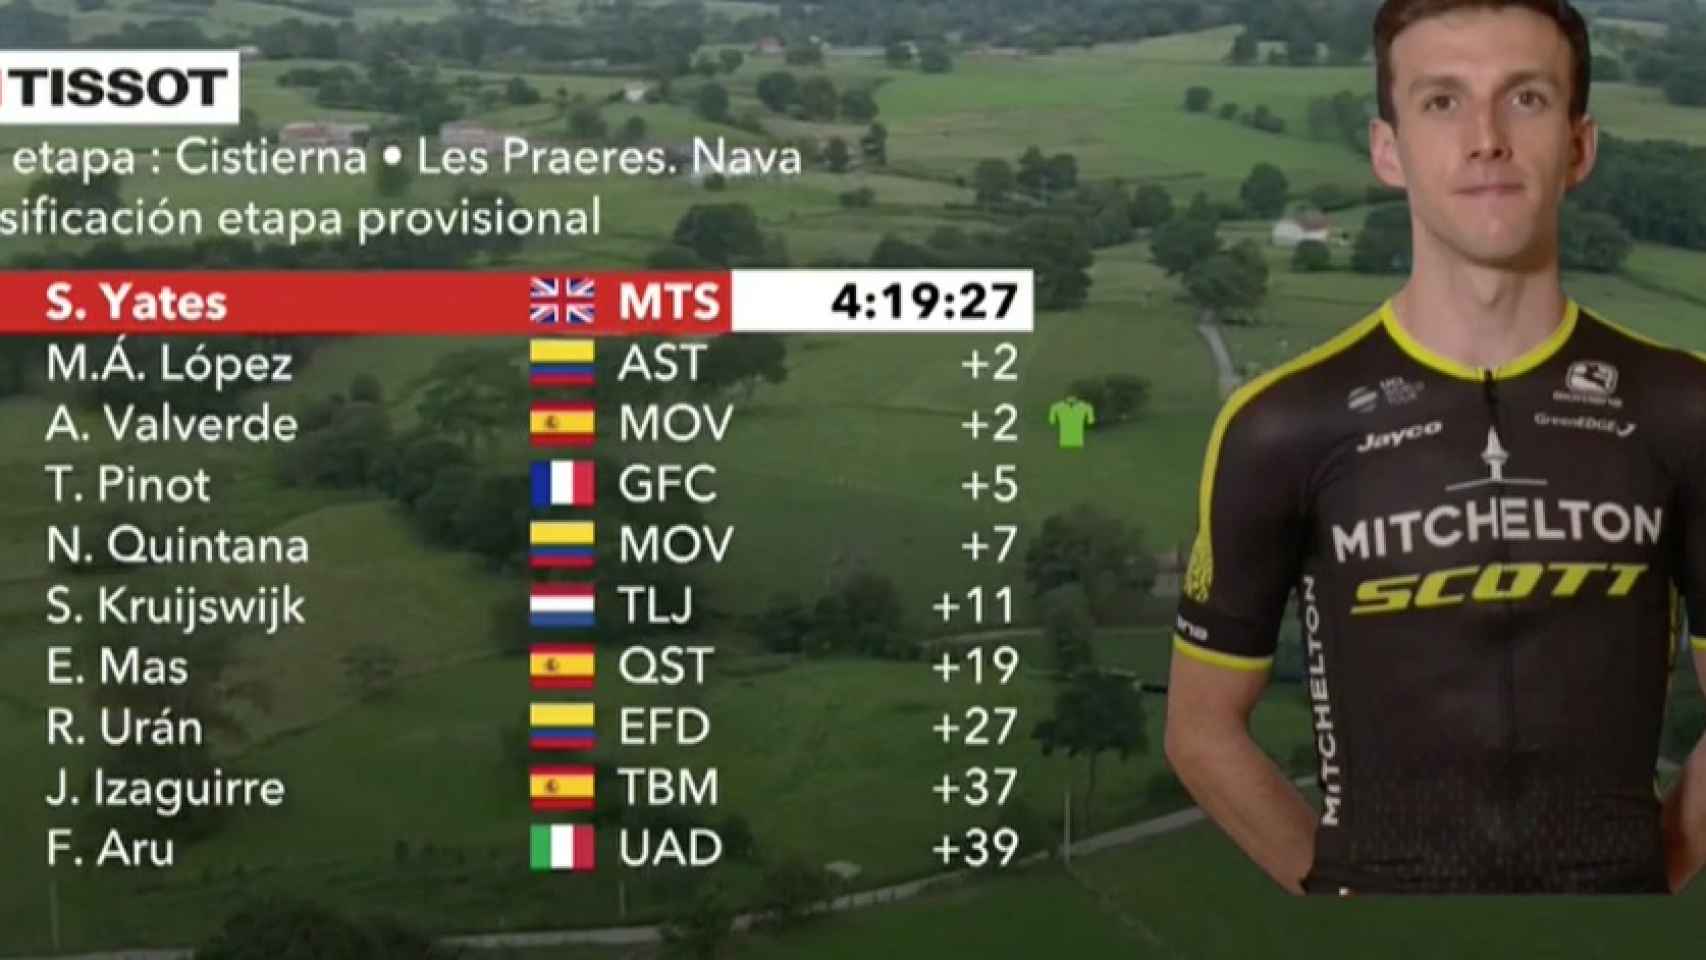 Clasificación de la etapa 14 de La Vuelta